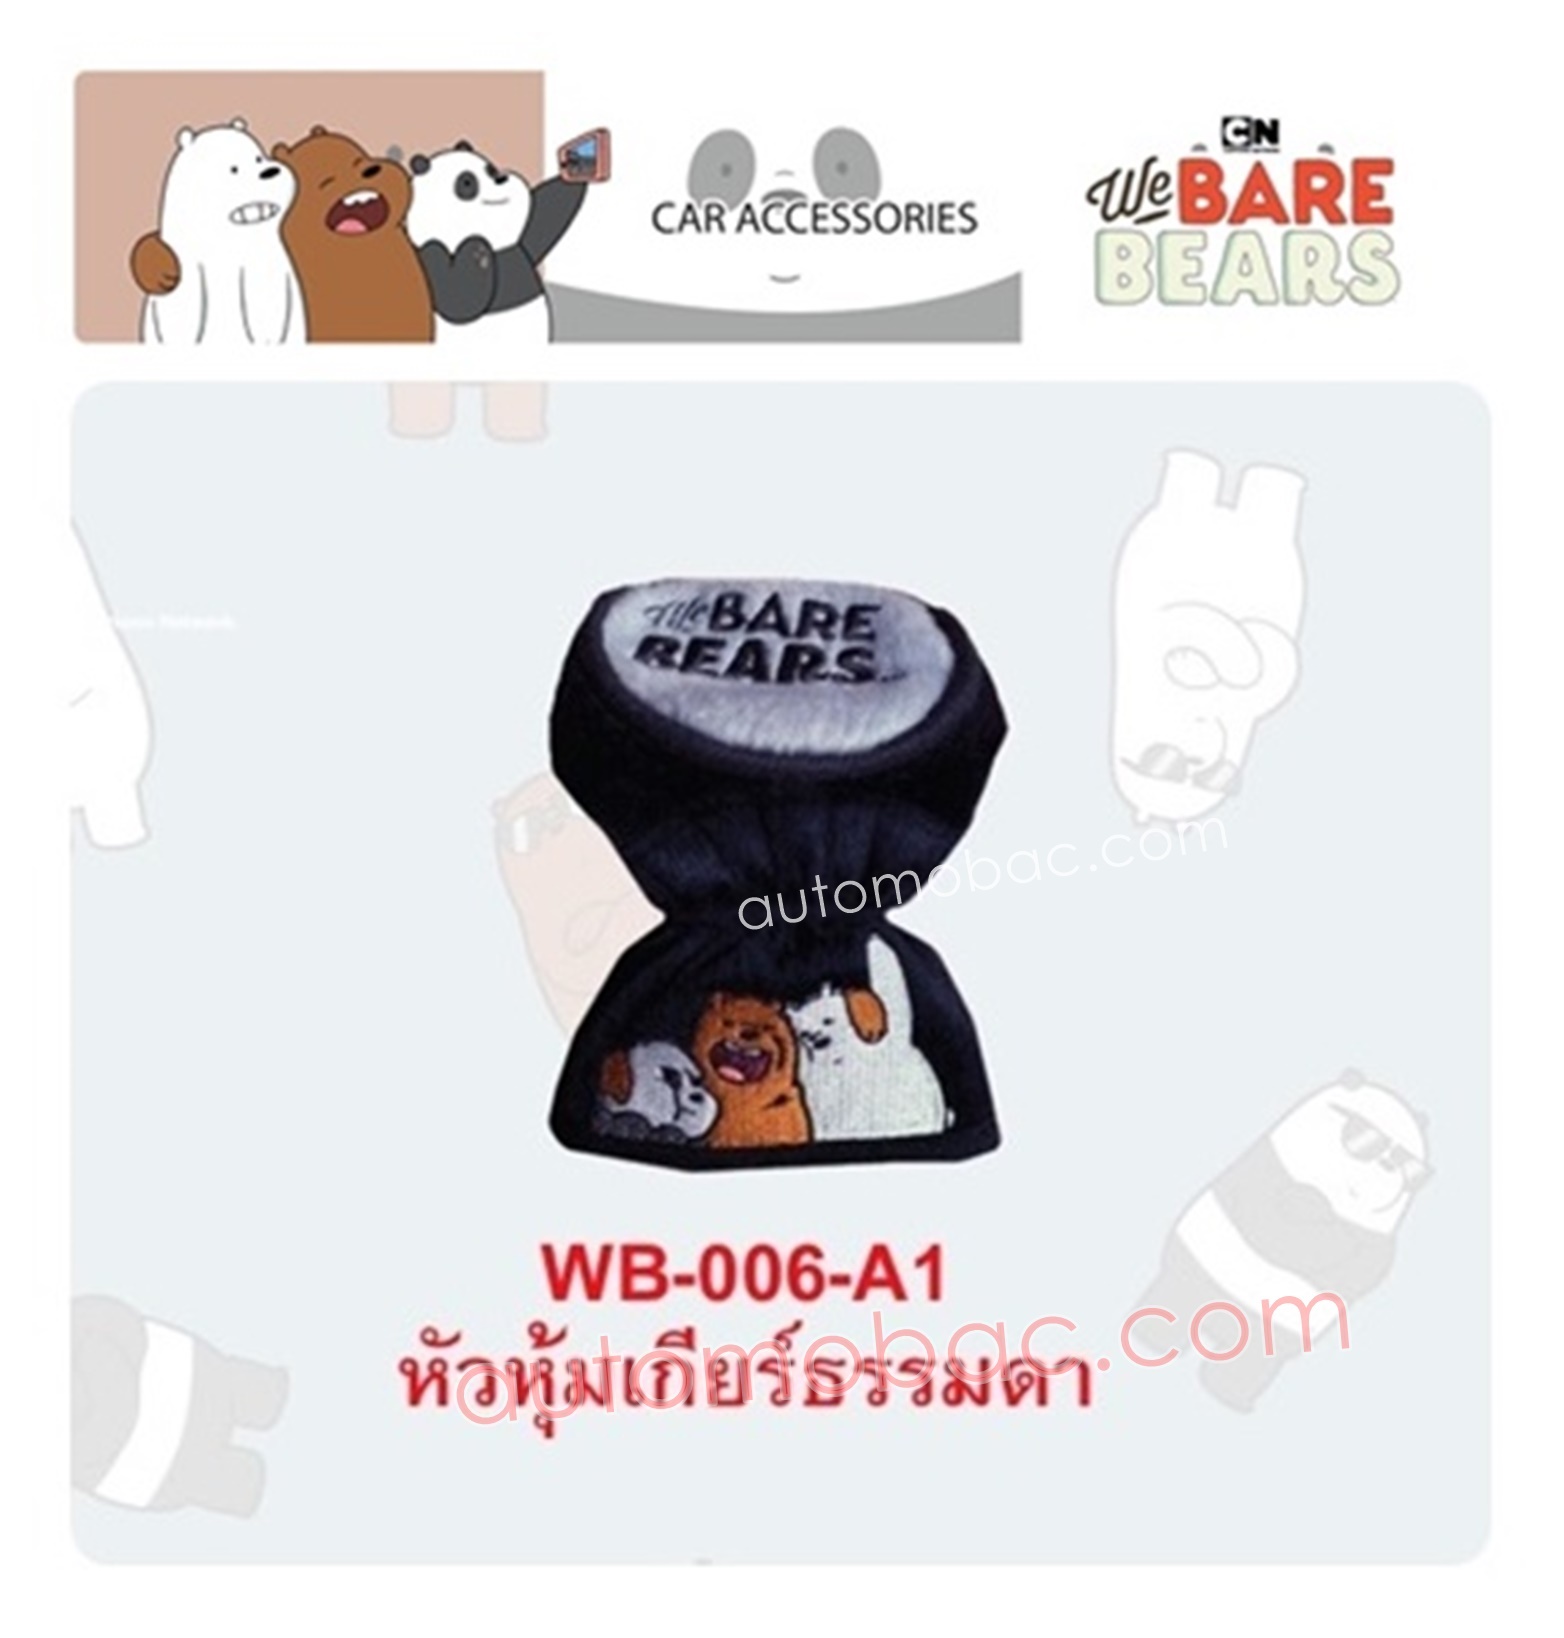 We Bare Bears ที่หุ้มเกียร์ ใช้หุ้มหัวเบาะรถยนต์ ปกป้องหัวเบาะจากความร้อน รอยขีดข่วน ลิขสิทธิ